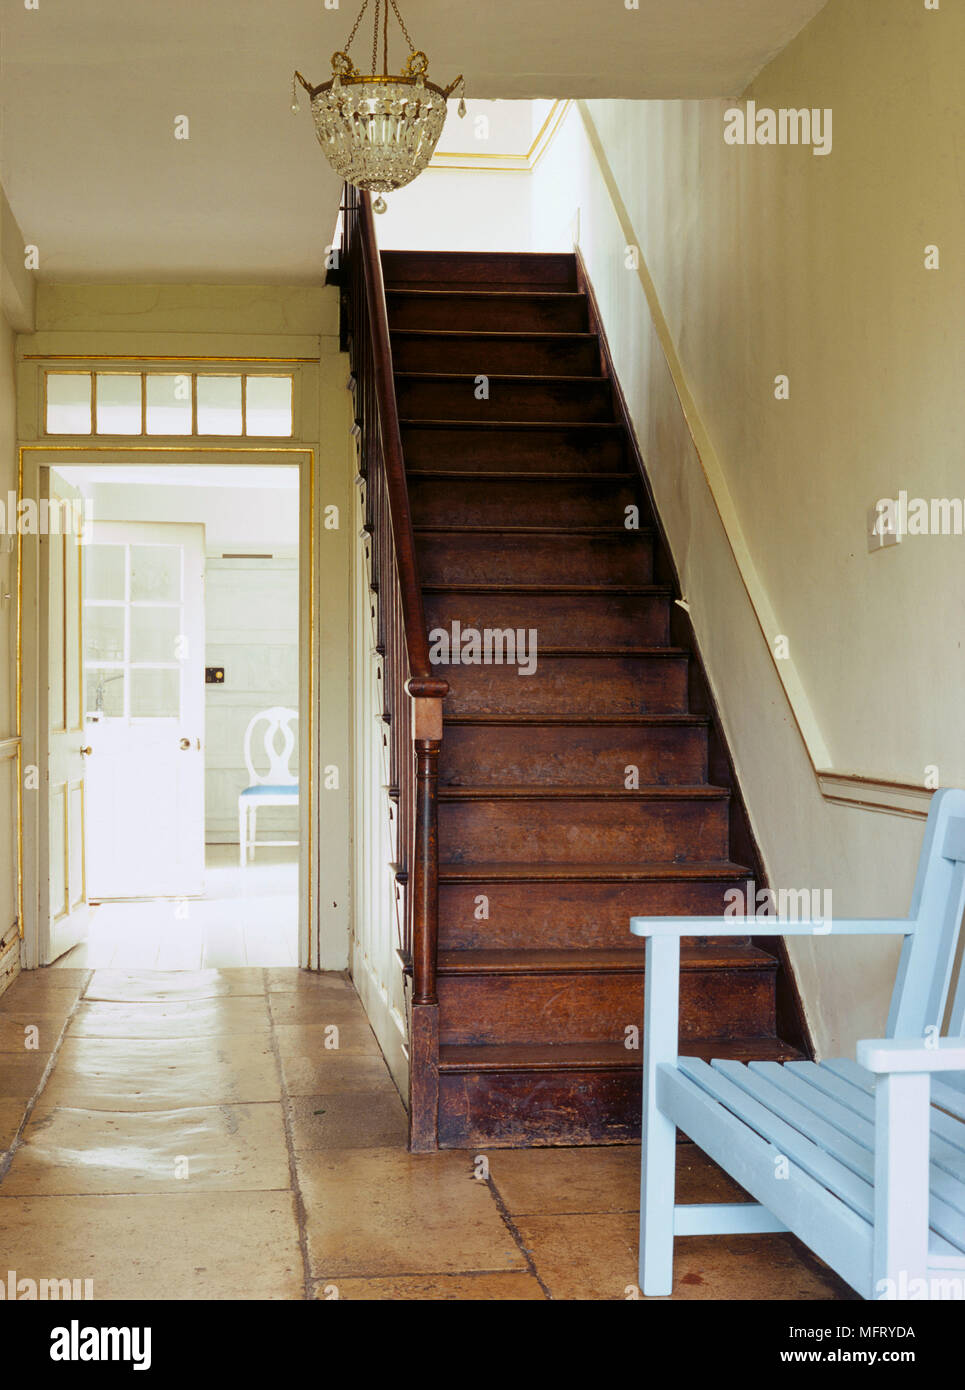 Eine Traditionelle, in neutralen Flur mit Steinplatten Boden und Holztreppe mit Blick durch die offene Tür hinaus Stockfoto